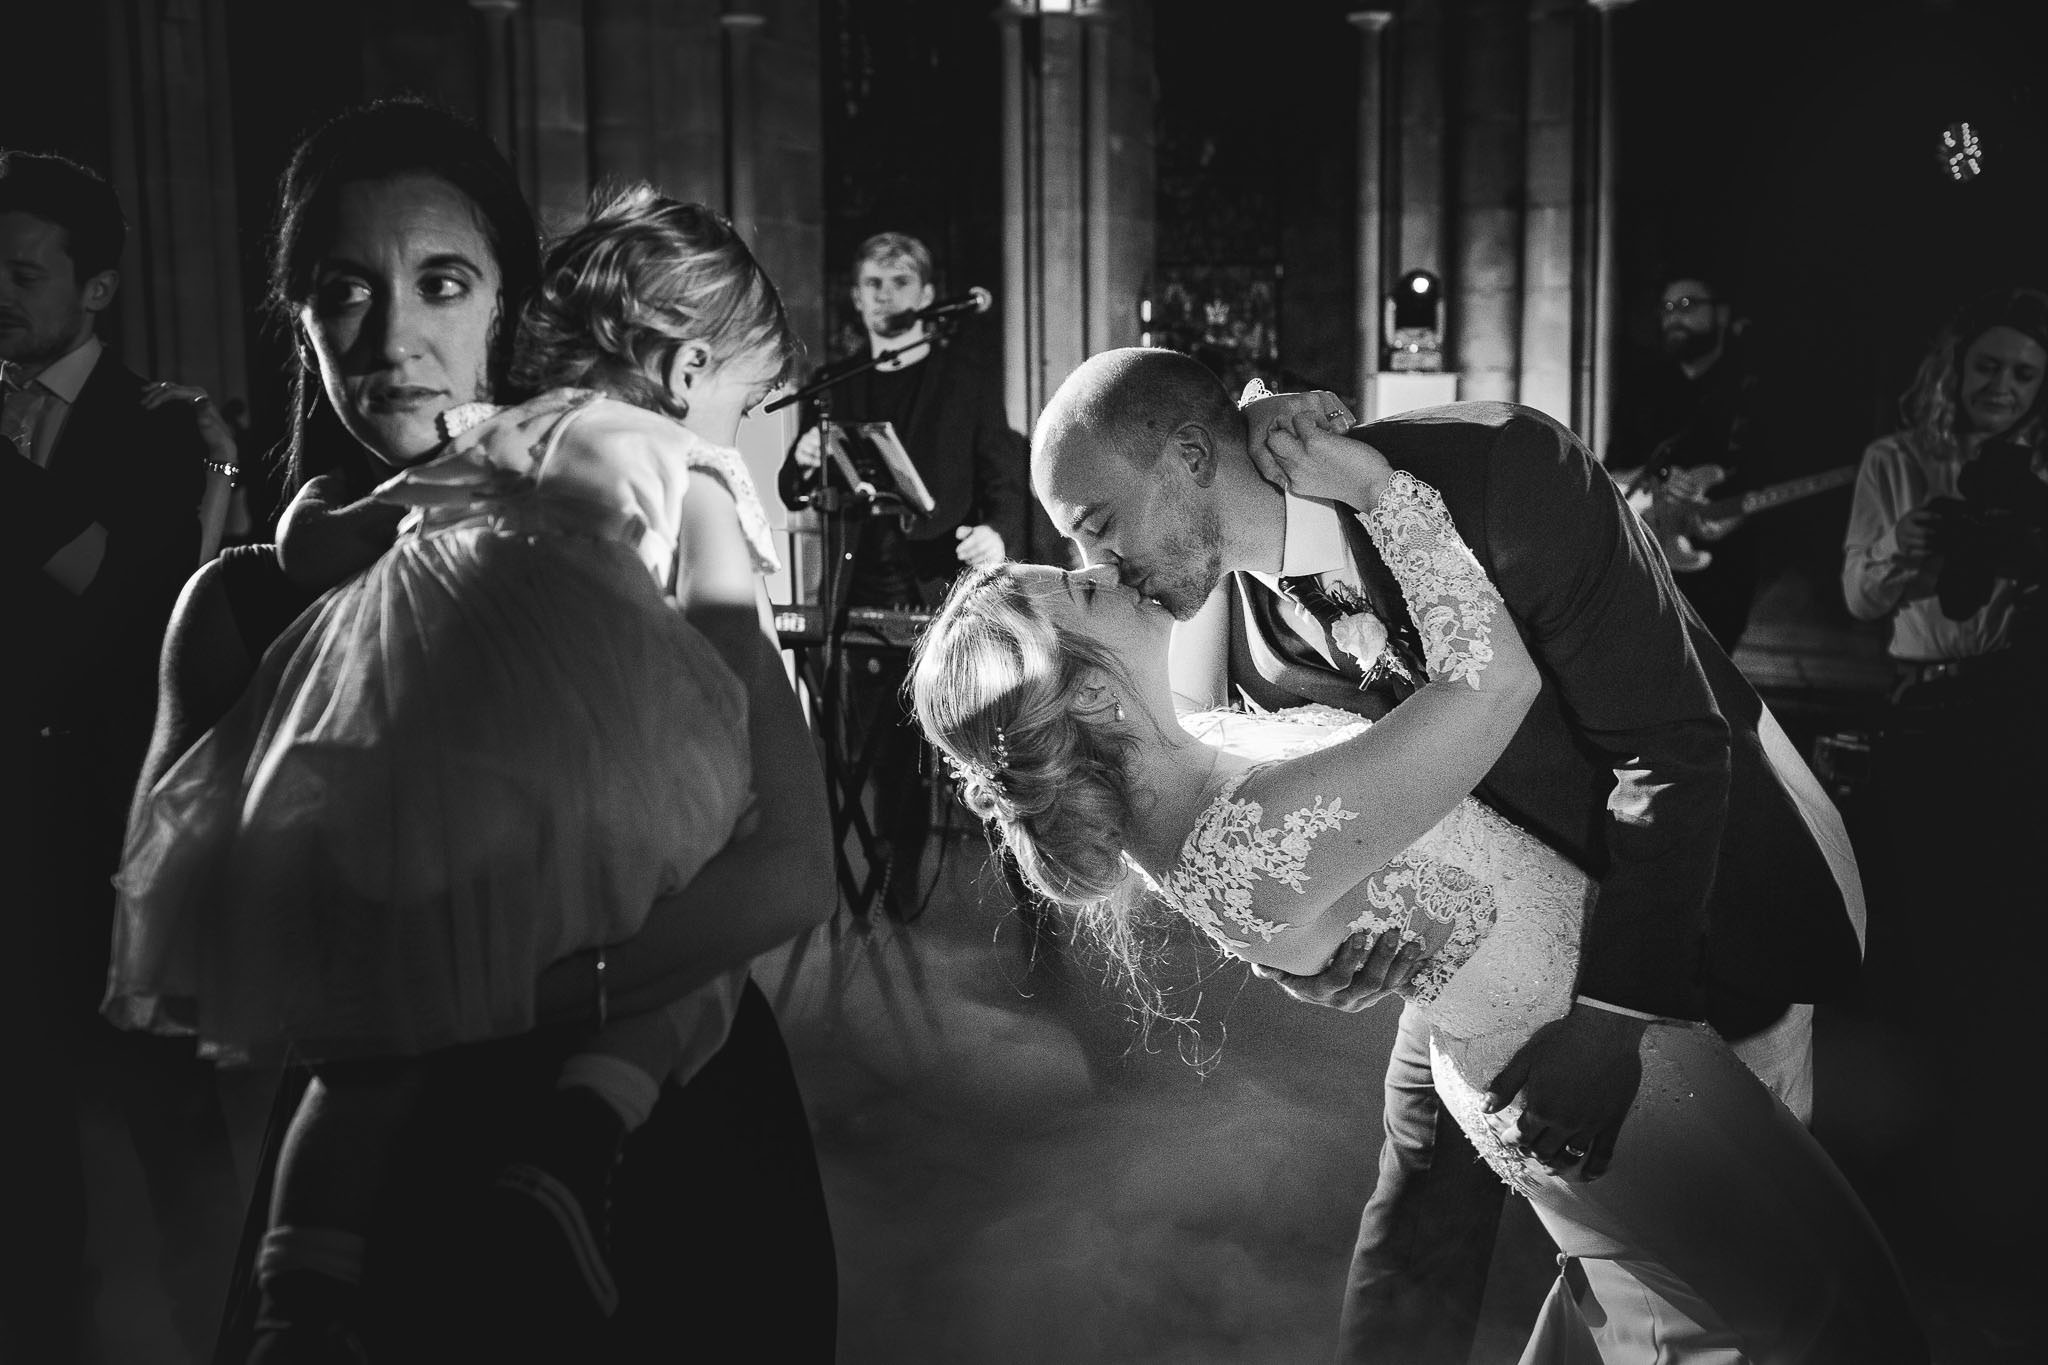 documentary wedding photographer on the dance floor